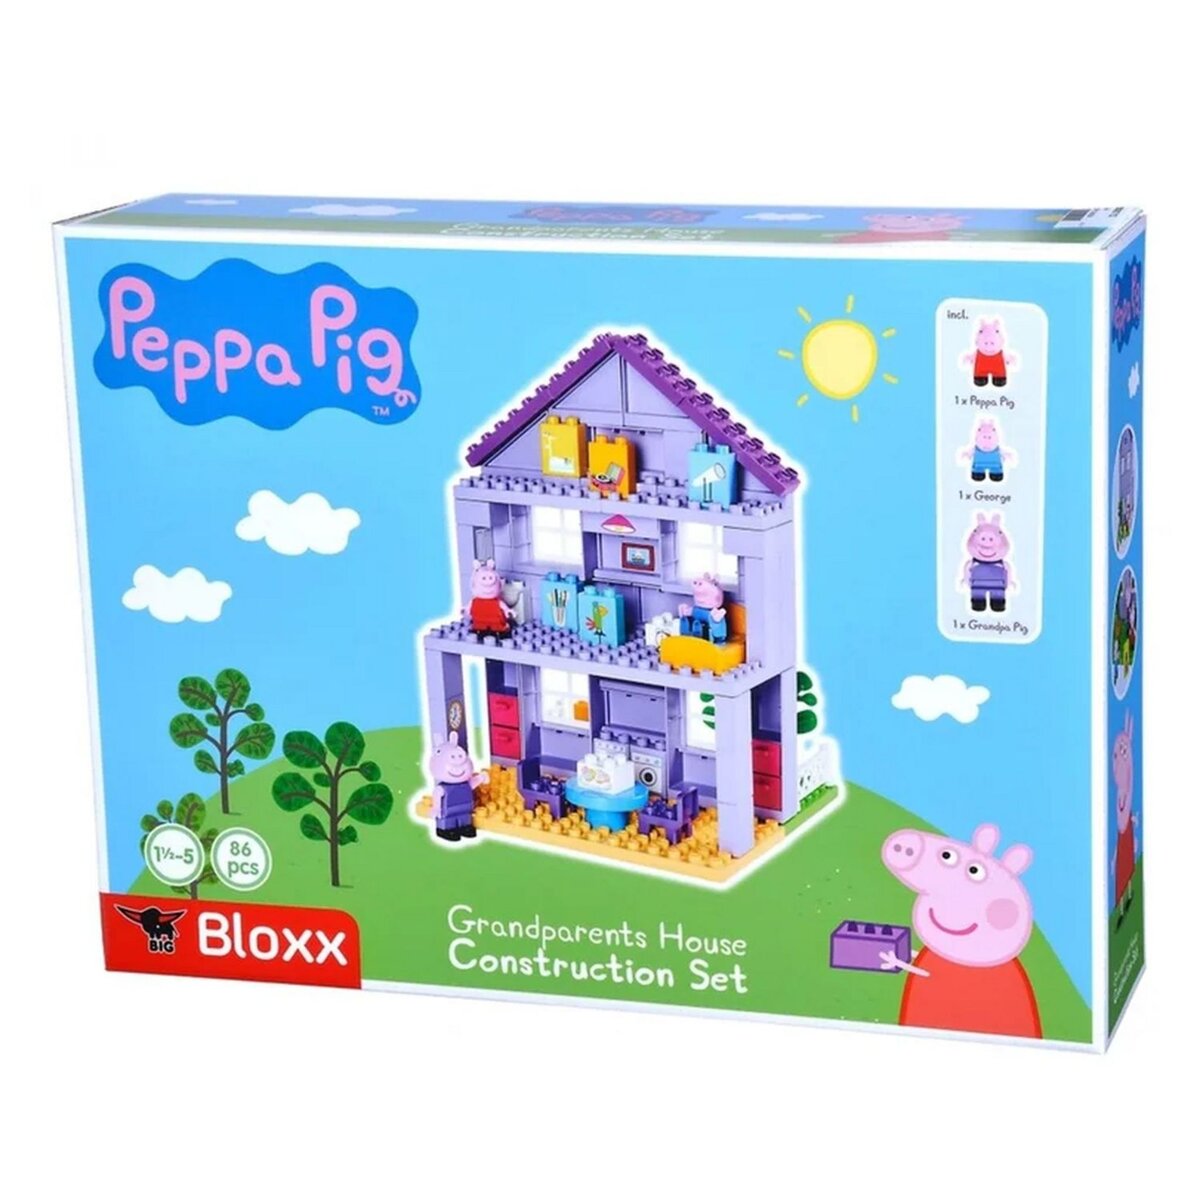 SIMBA Set construction La maison des grands-parents Peppa Pig Big Bloxx